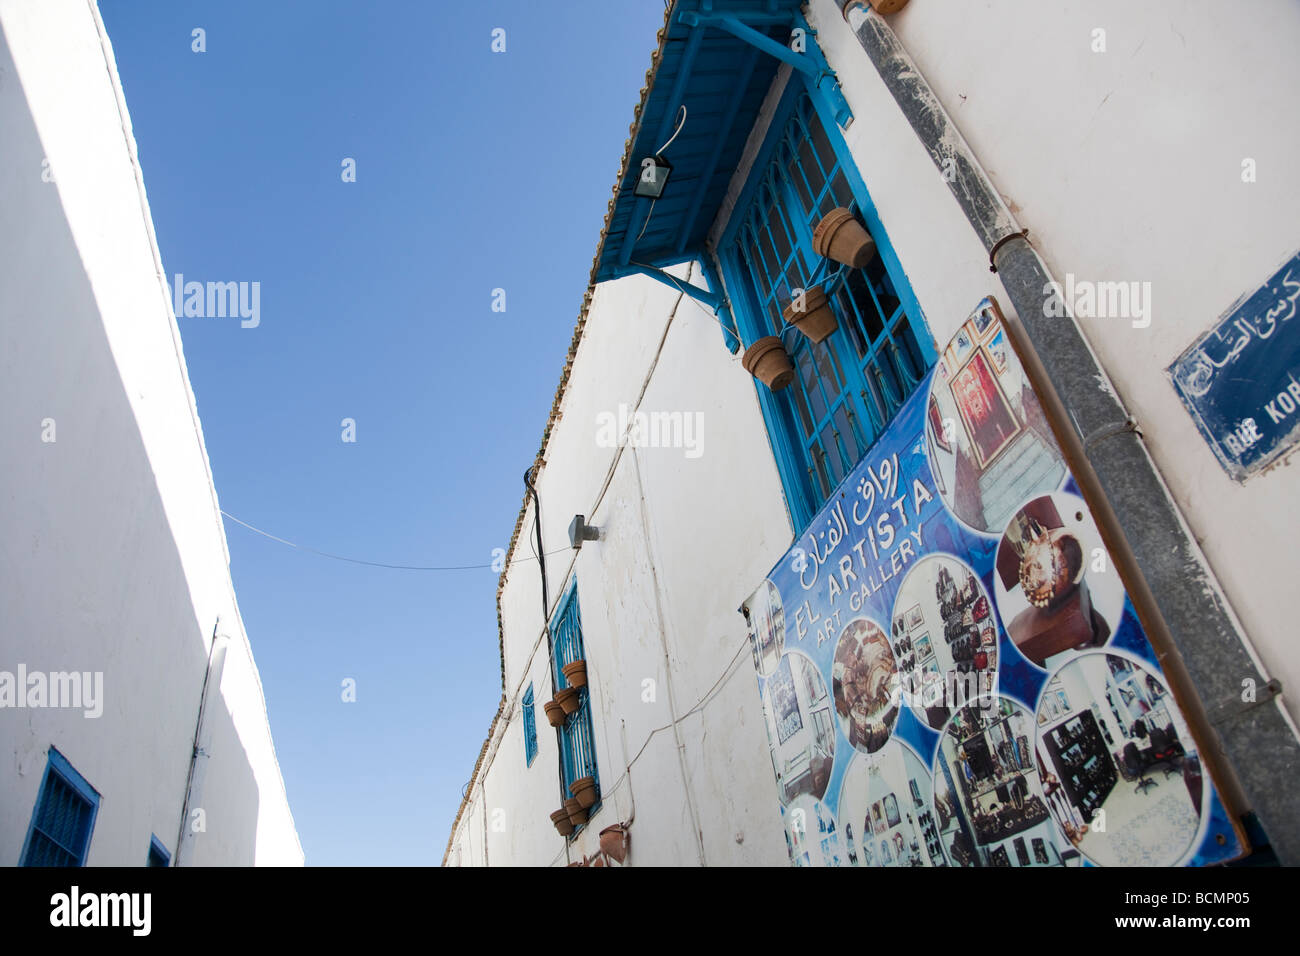 Sidi Bou Saïd, près de la capitale tunisienne, est une charmante ville de murs blancs et bleus de la mer des portes et fenêtres. Banque D'Images